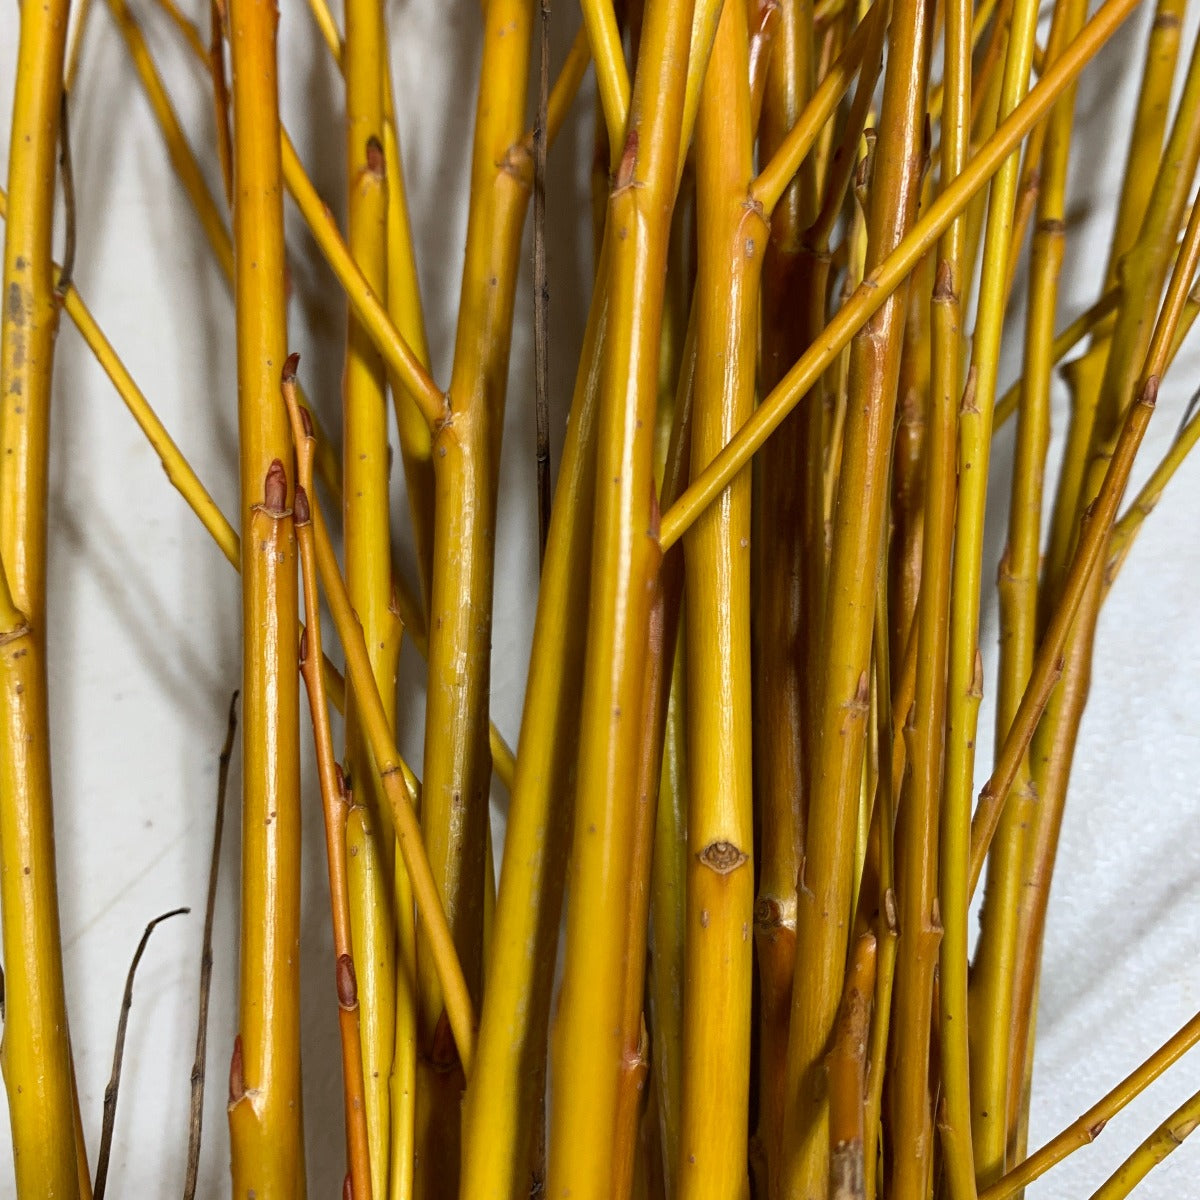 Golden Willow Cutting